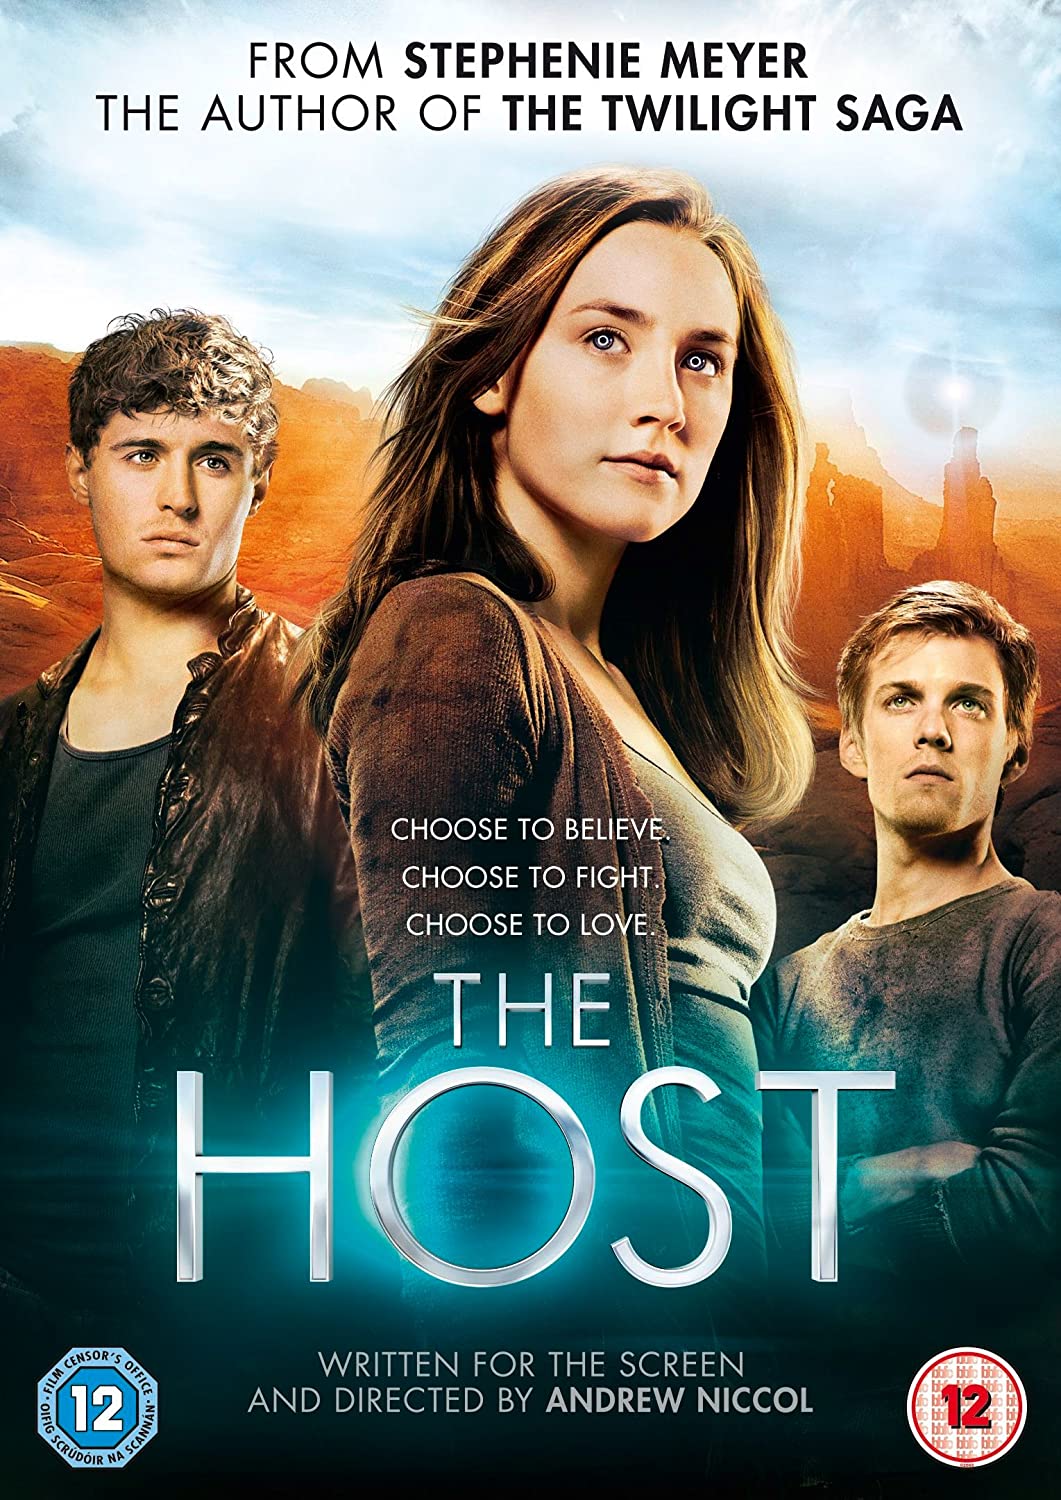 The Host – Horror/Action [DVD]